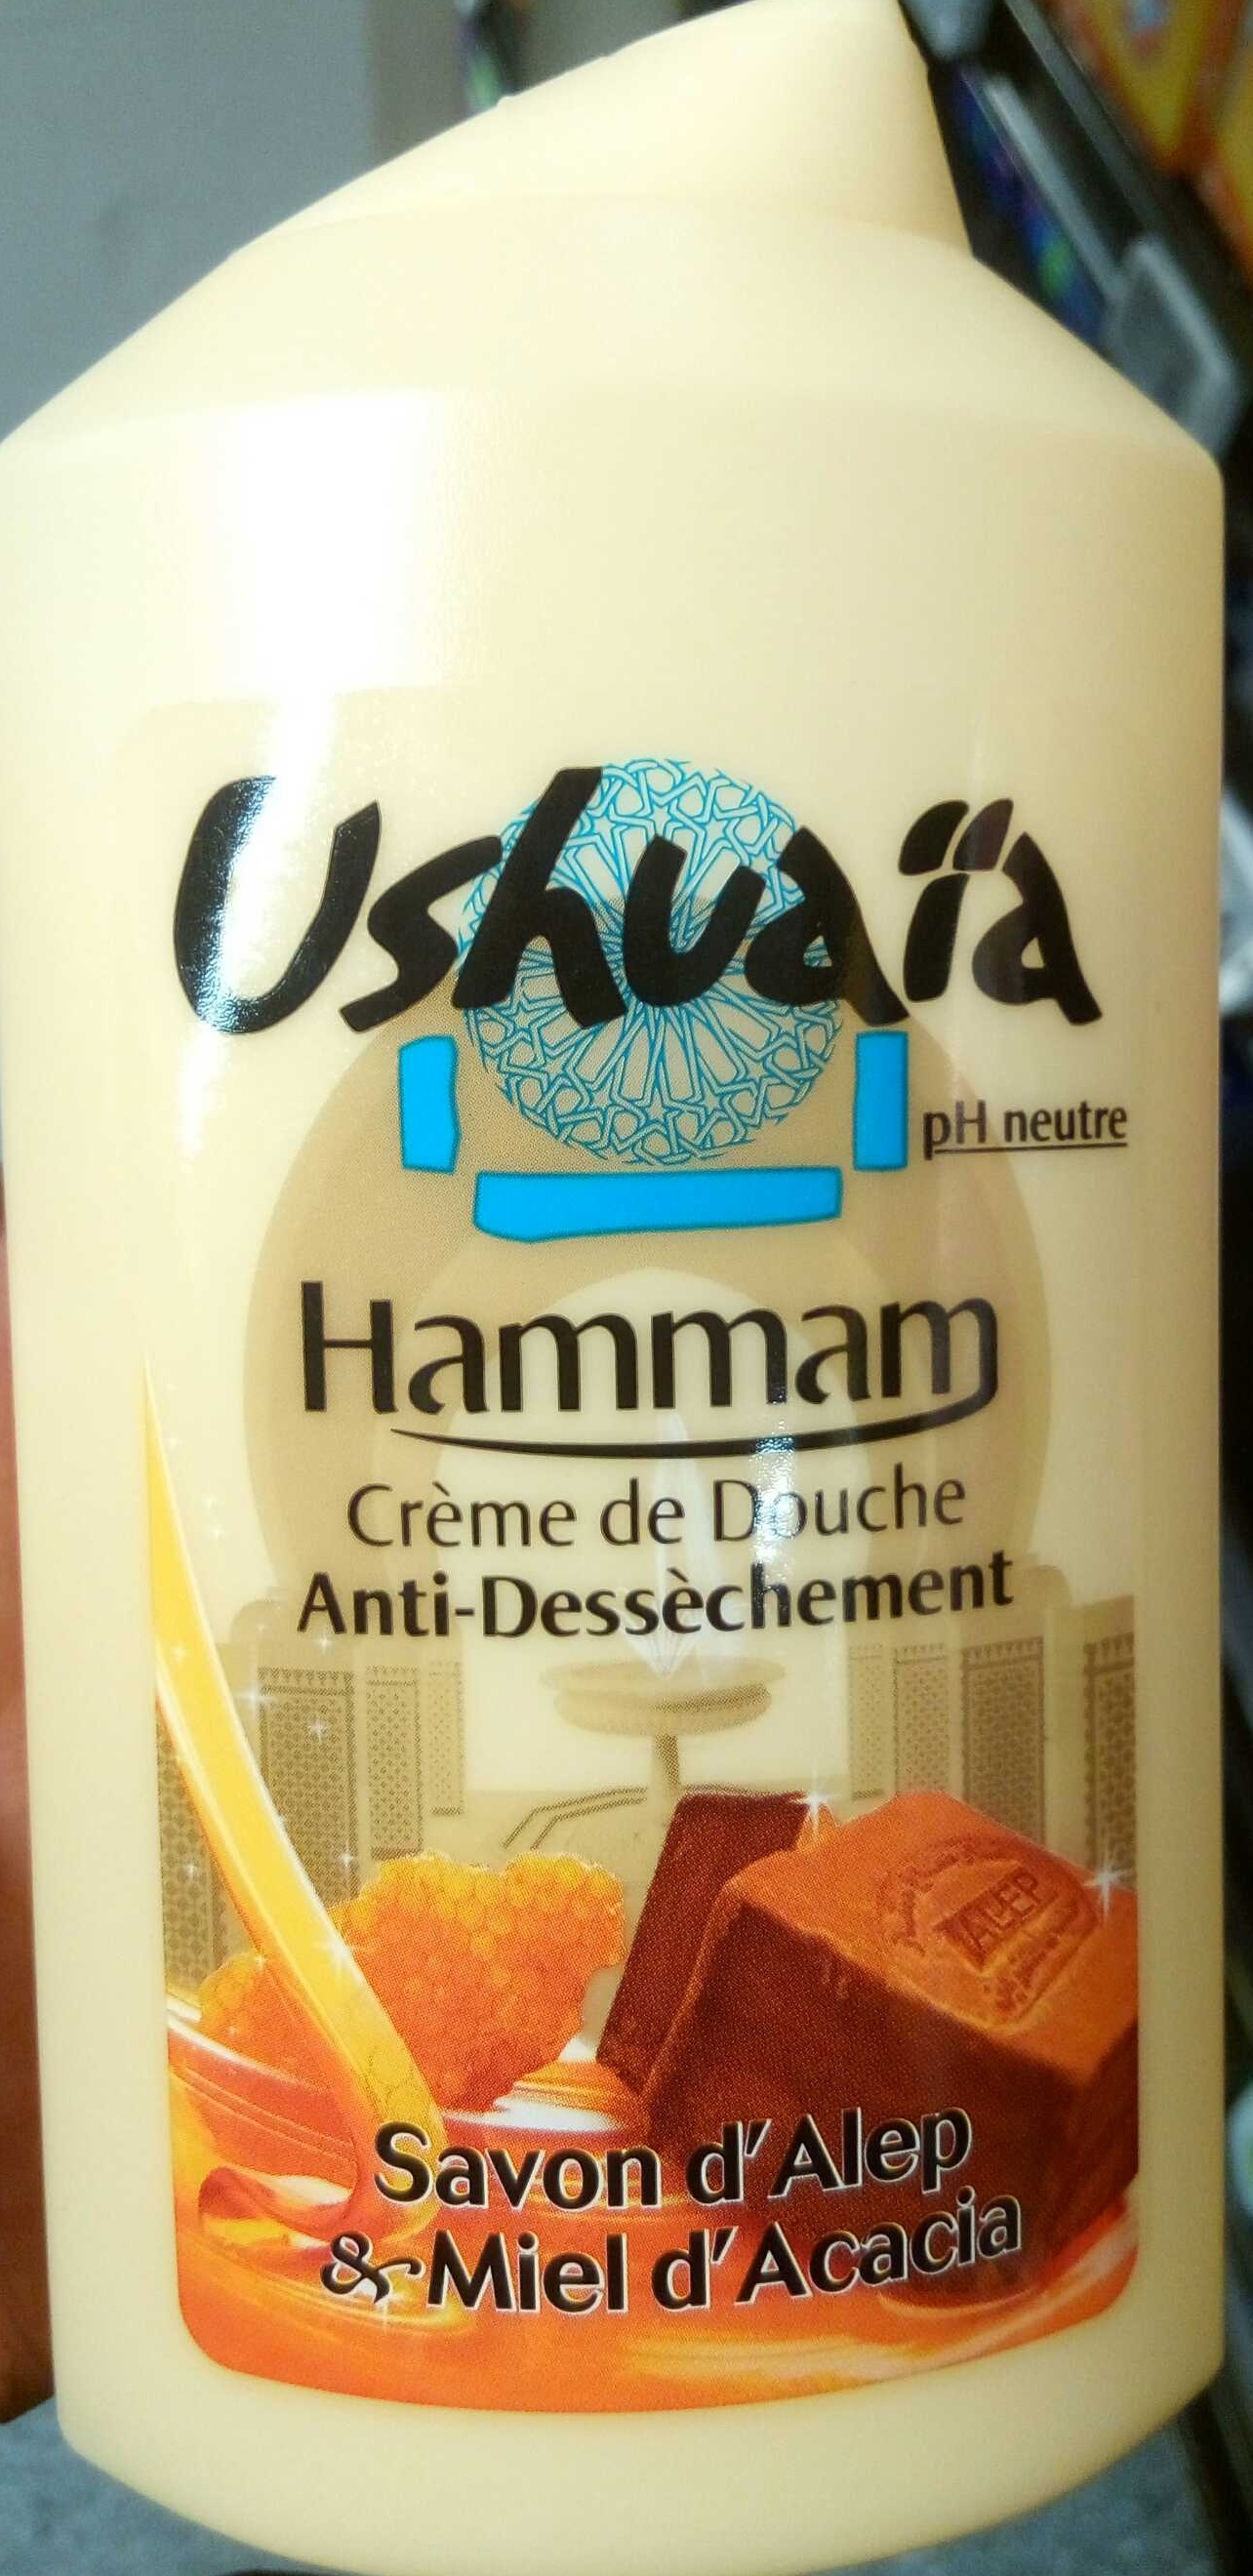 Crème de Douche anti-dessèchement Hammam Savon d'Alep & Miel d'Acacia - Product - fr